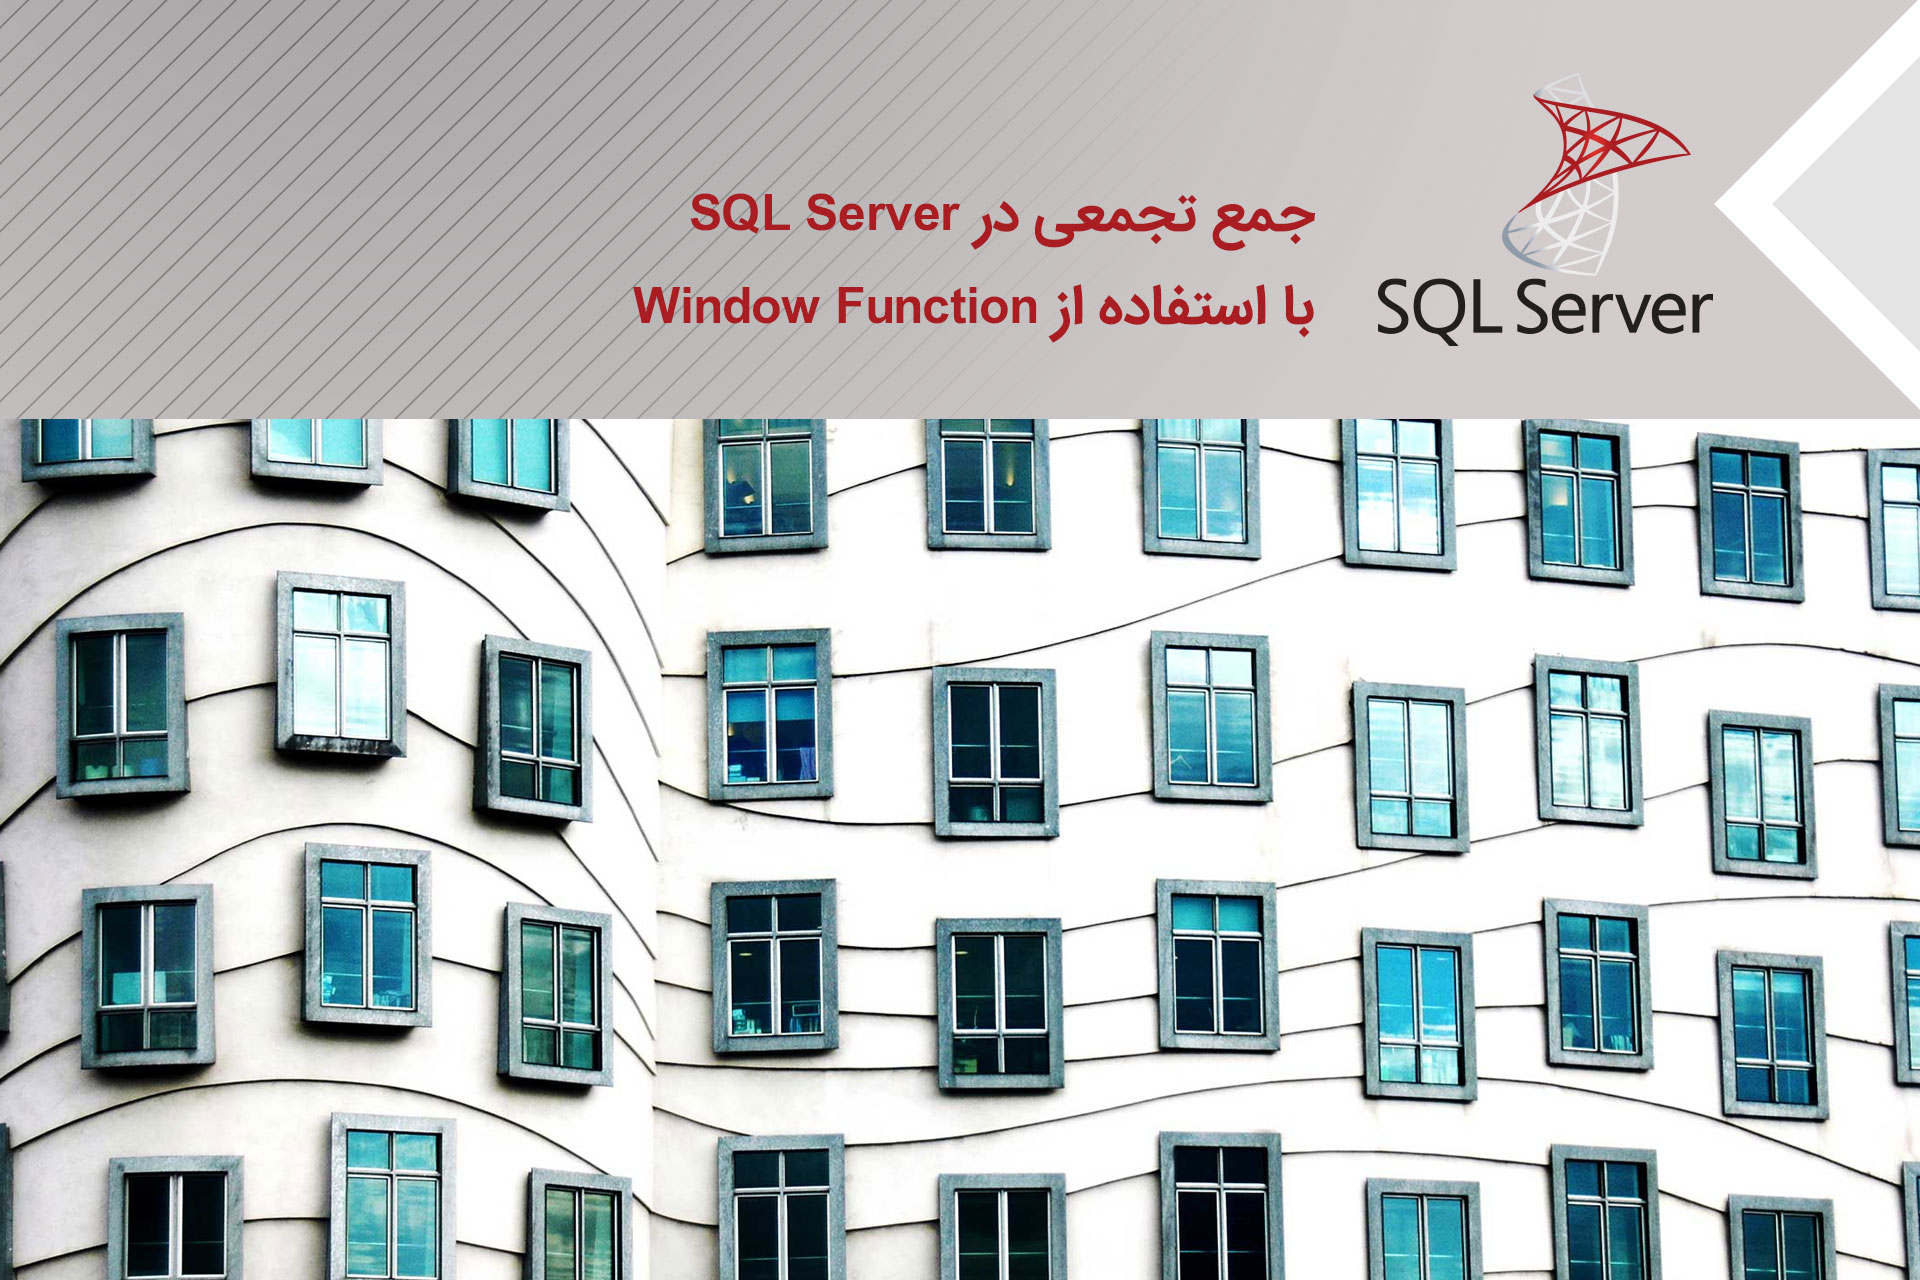 جمع تجمعی در SQL Server با استفاده از Window Function